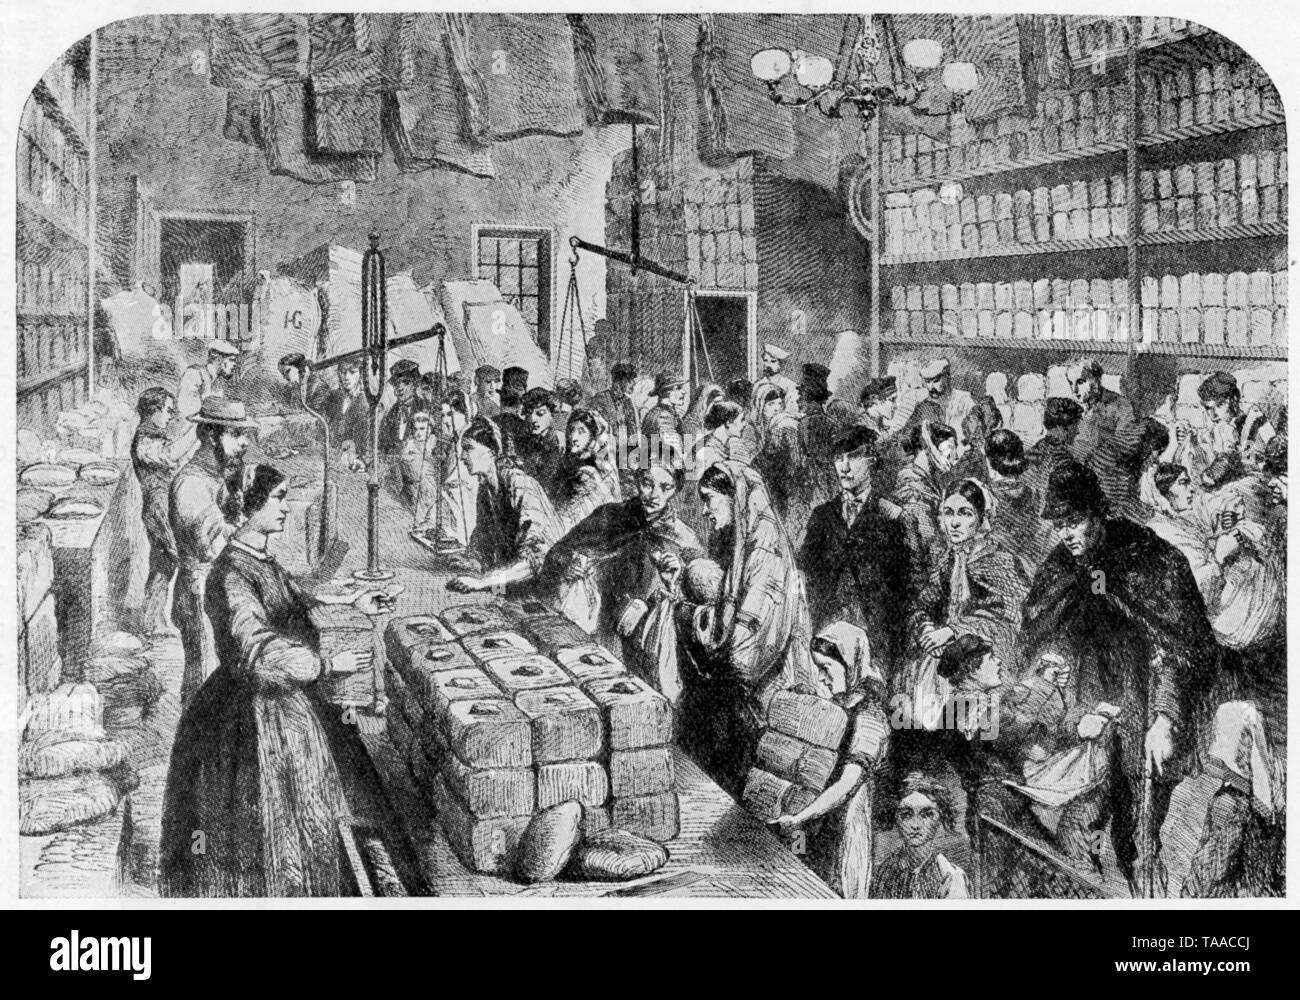 Szene während der Baumwolle Hungersnot in Lancashire', 1862. Von der Illustrated London News, 29. November 1863. Die Baumwolle Teuerung war ein Tiefstand in der Textilindustrie im Nordwesten von England, die durch die Unterbrechung der Einfuhren von Baumwollbettwäsche aus Amerika durch den Amerikanischen Bürgerkrieg verursacht. Diese Gravur zeigt eine Szene in der Manchester und Salford Provident Society, der Bereitstellung Tickets ausgestellt, um die vorherrschende Not lindern. Stockfoto